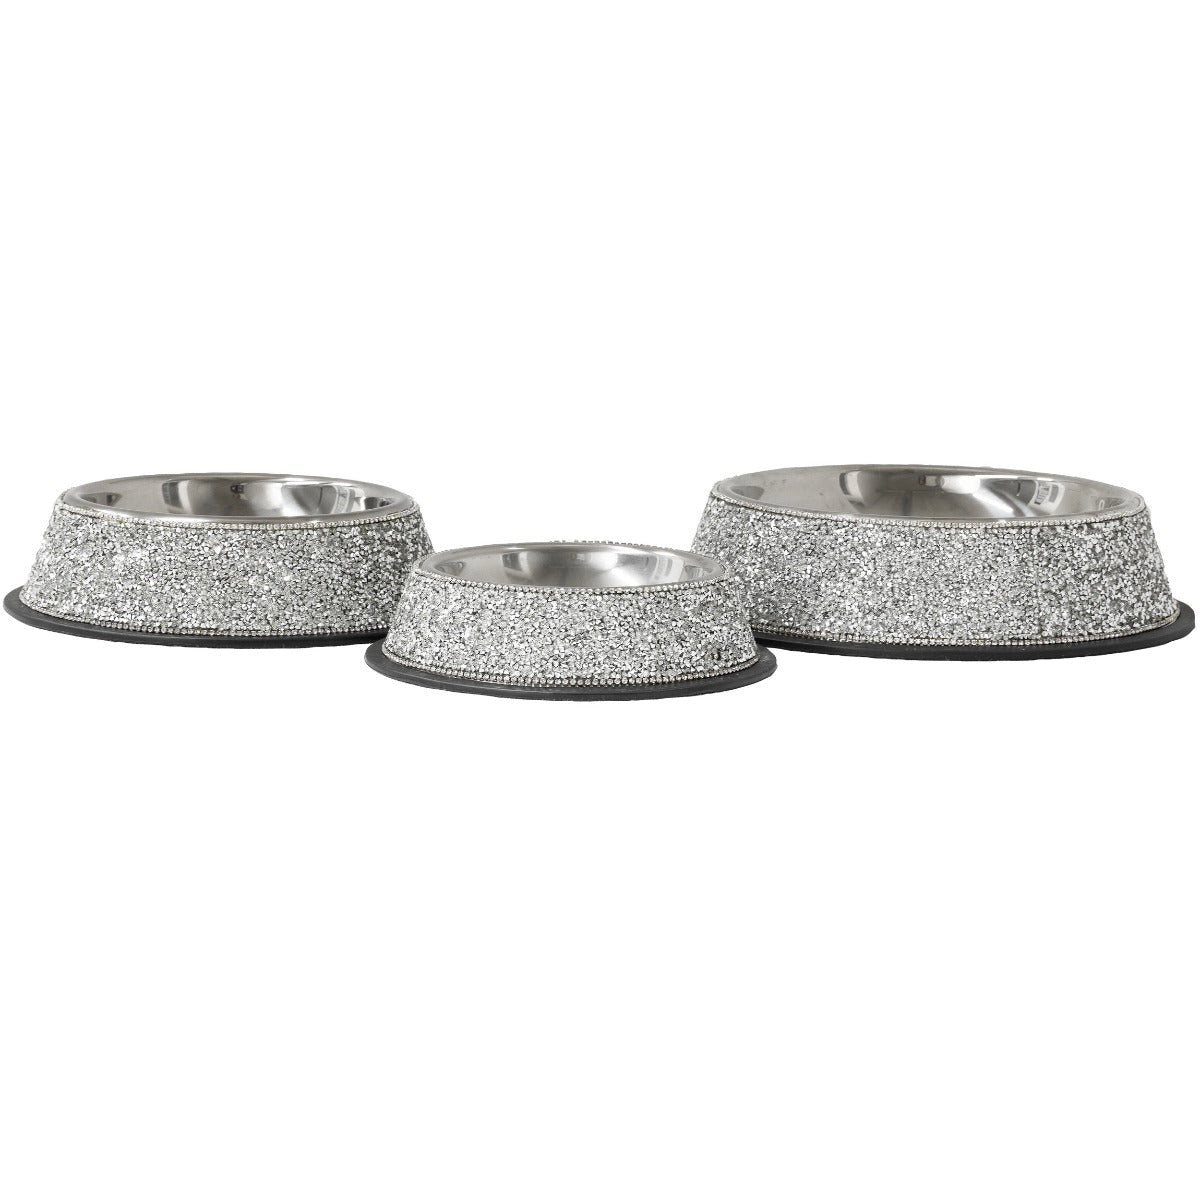 Pet Bowl Stainless Steel Multifaceted Rhinestones